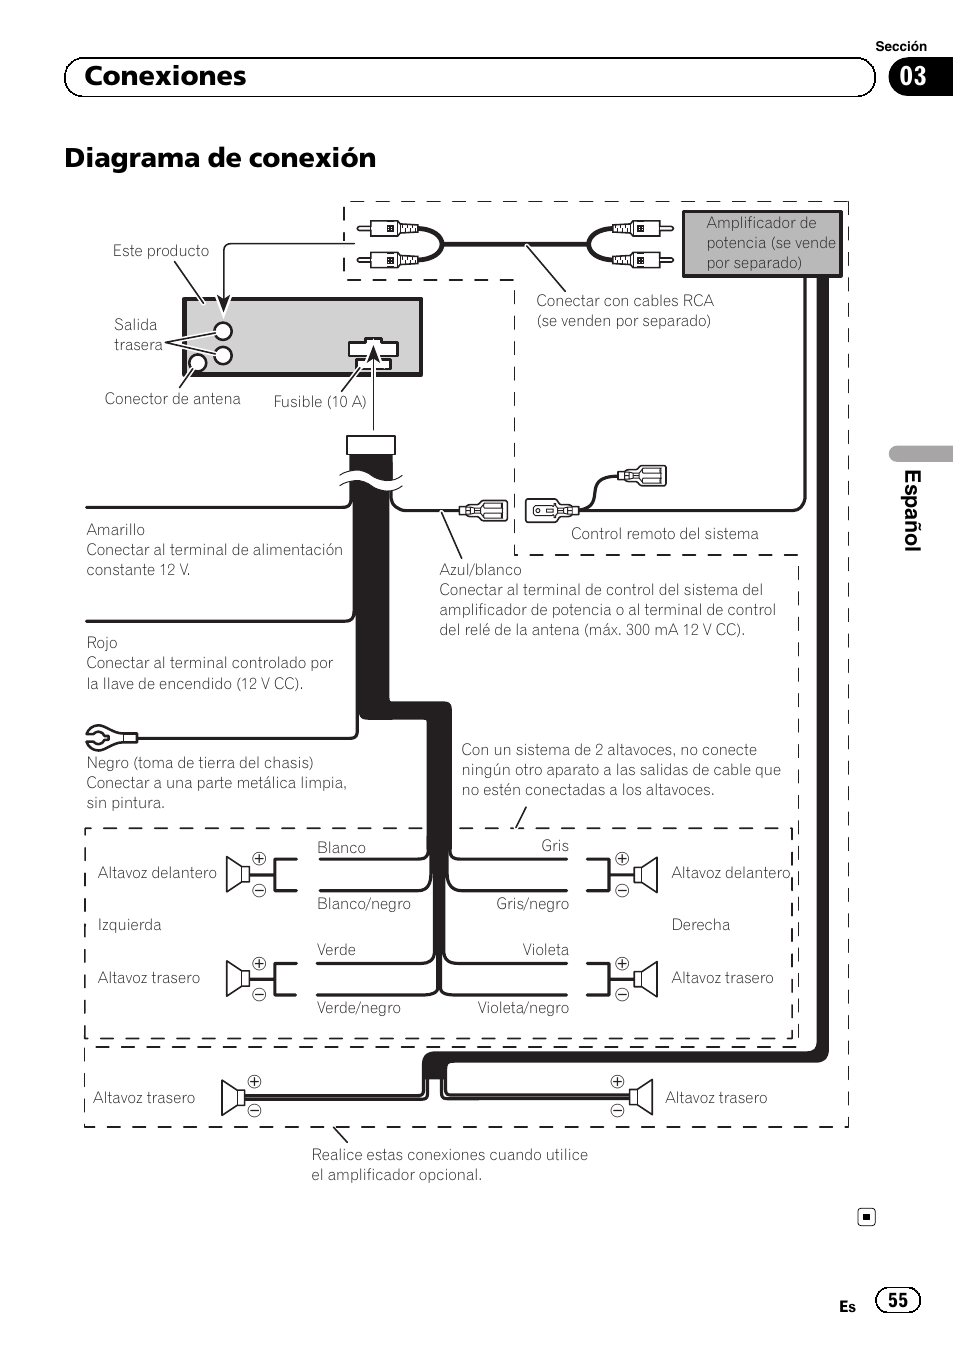 Diagrama de conexión, Conexiones, Español | Pioneer DEH-1100MP User Manual  | Page 55 / 62 | Original mode